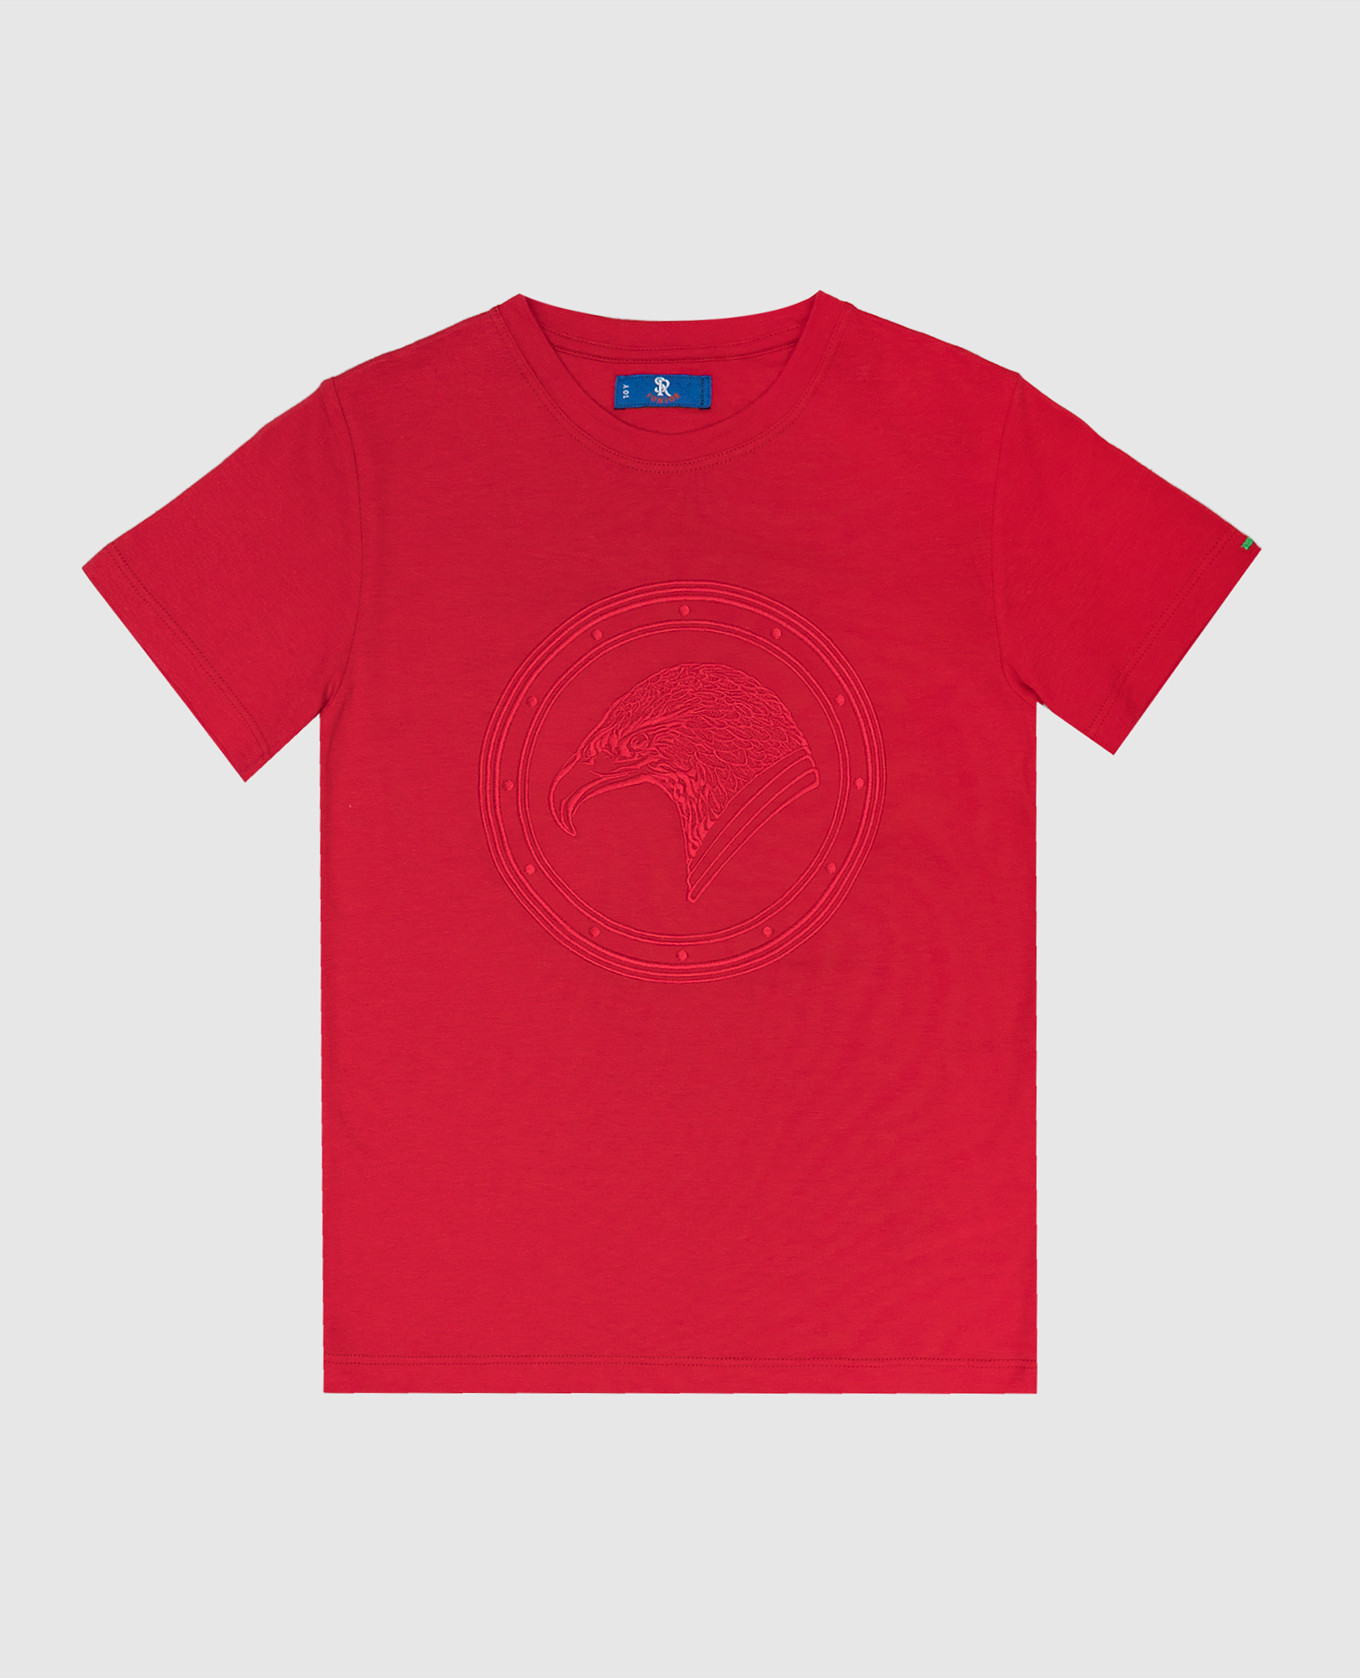 Детская красная футболка с вышивкой логотипа